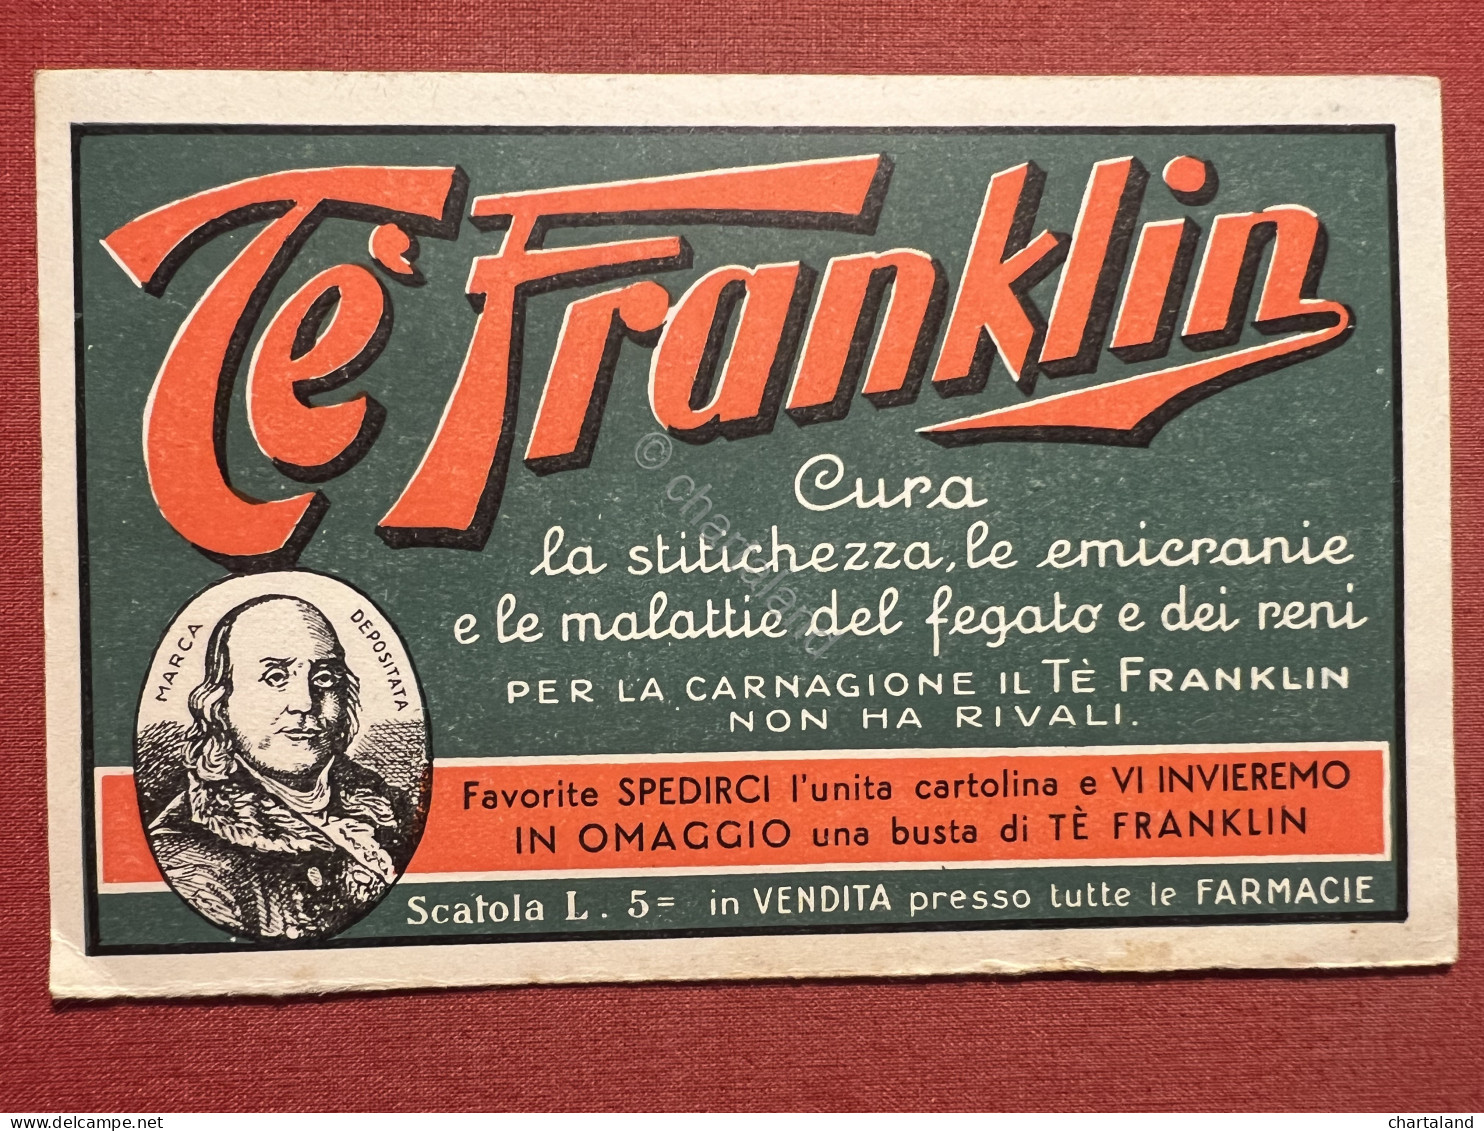 Cartolina Pubblicitaria - Tè Franklin - Società Anonima A. Manzoni, Milano 1933 - Advertising